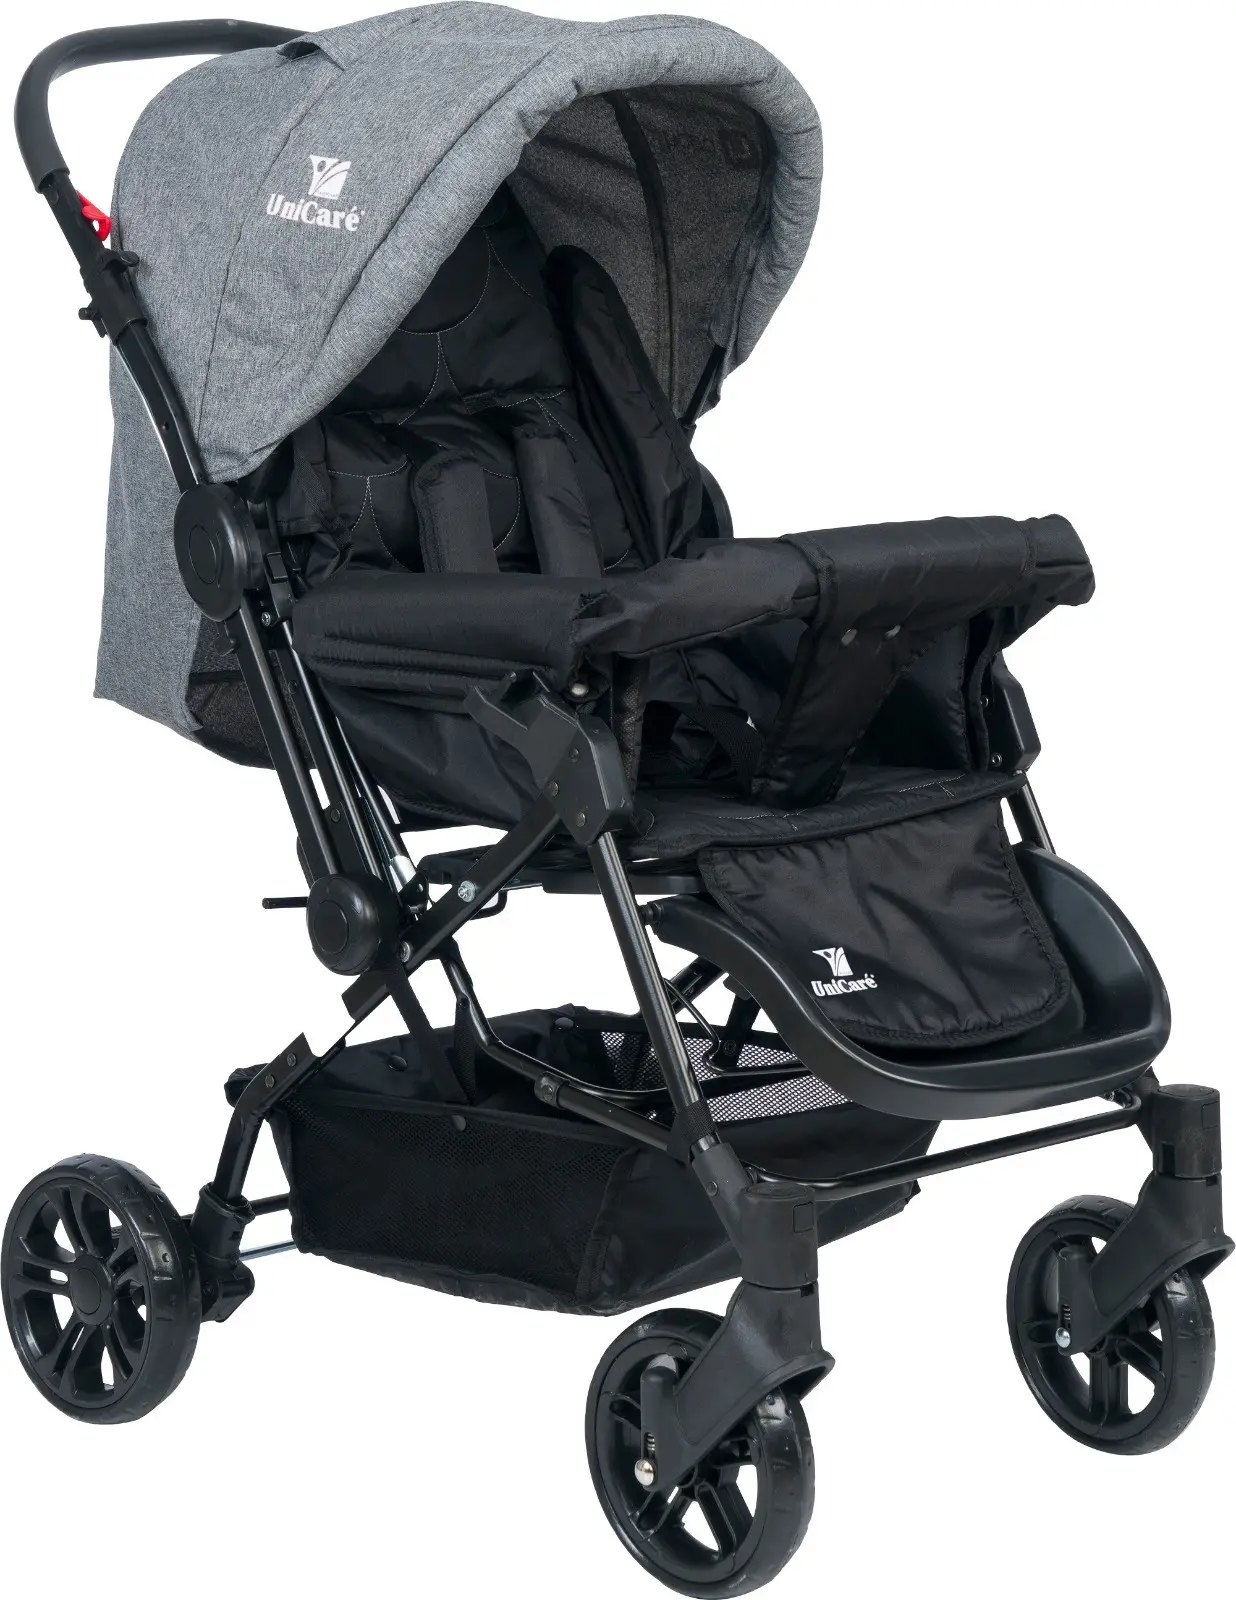 Cochecito de bebé ligero y multifunción, carrito de bebé plegable fácil, bidireccional, asientos cómodos de diseño, venta al por mayor